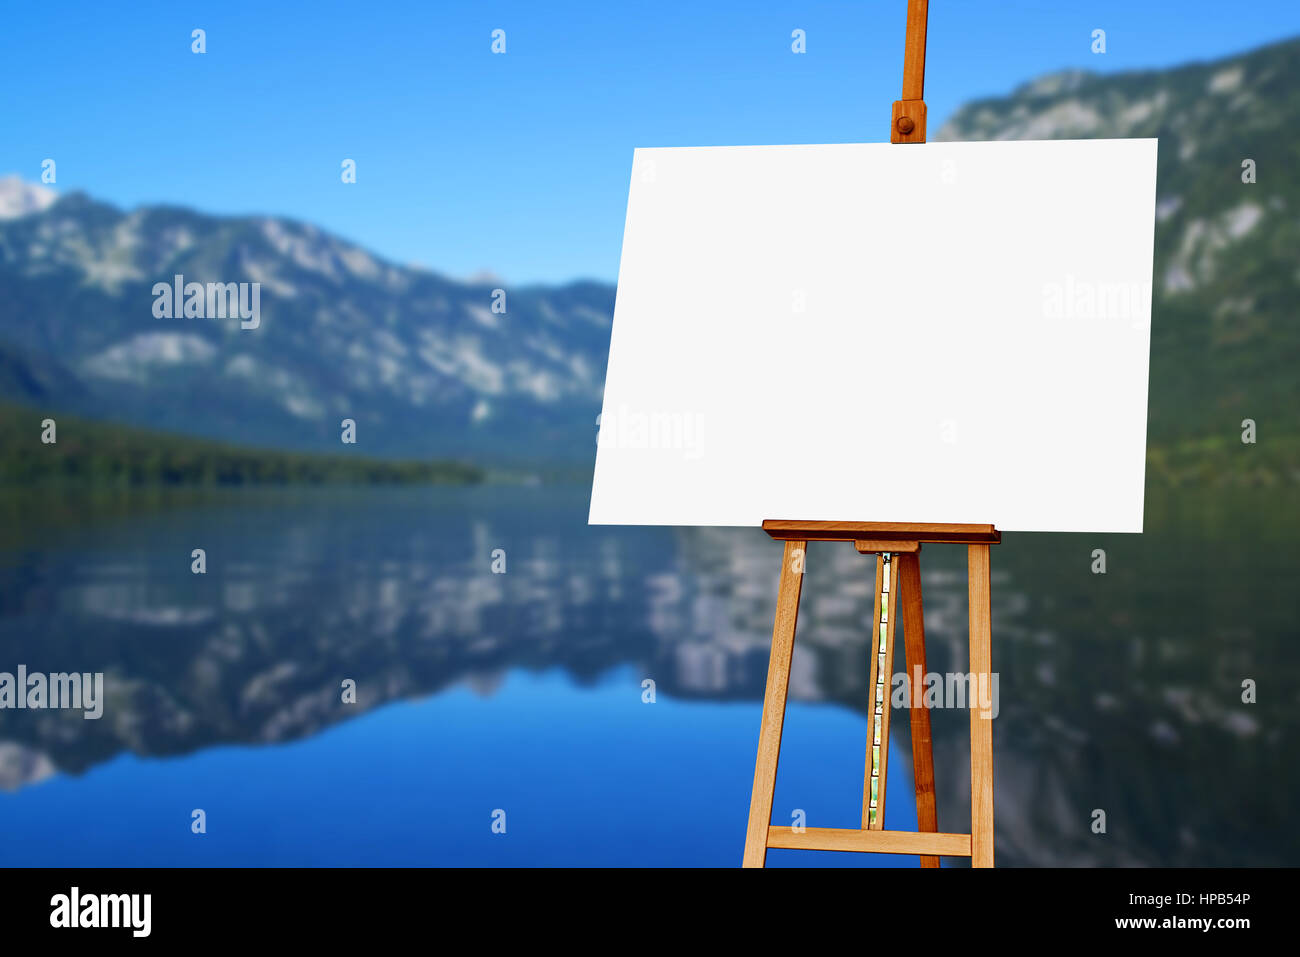 Artiste peintre vierge toile sur chevalet, avec le lac en arrière-plan, copie espace de création artistique photo ou peinture Banque D'Images